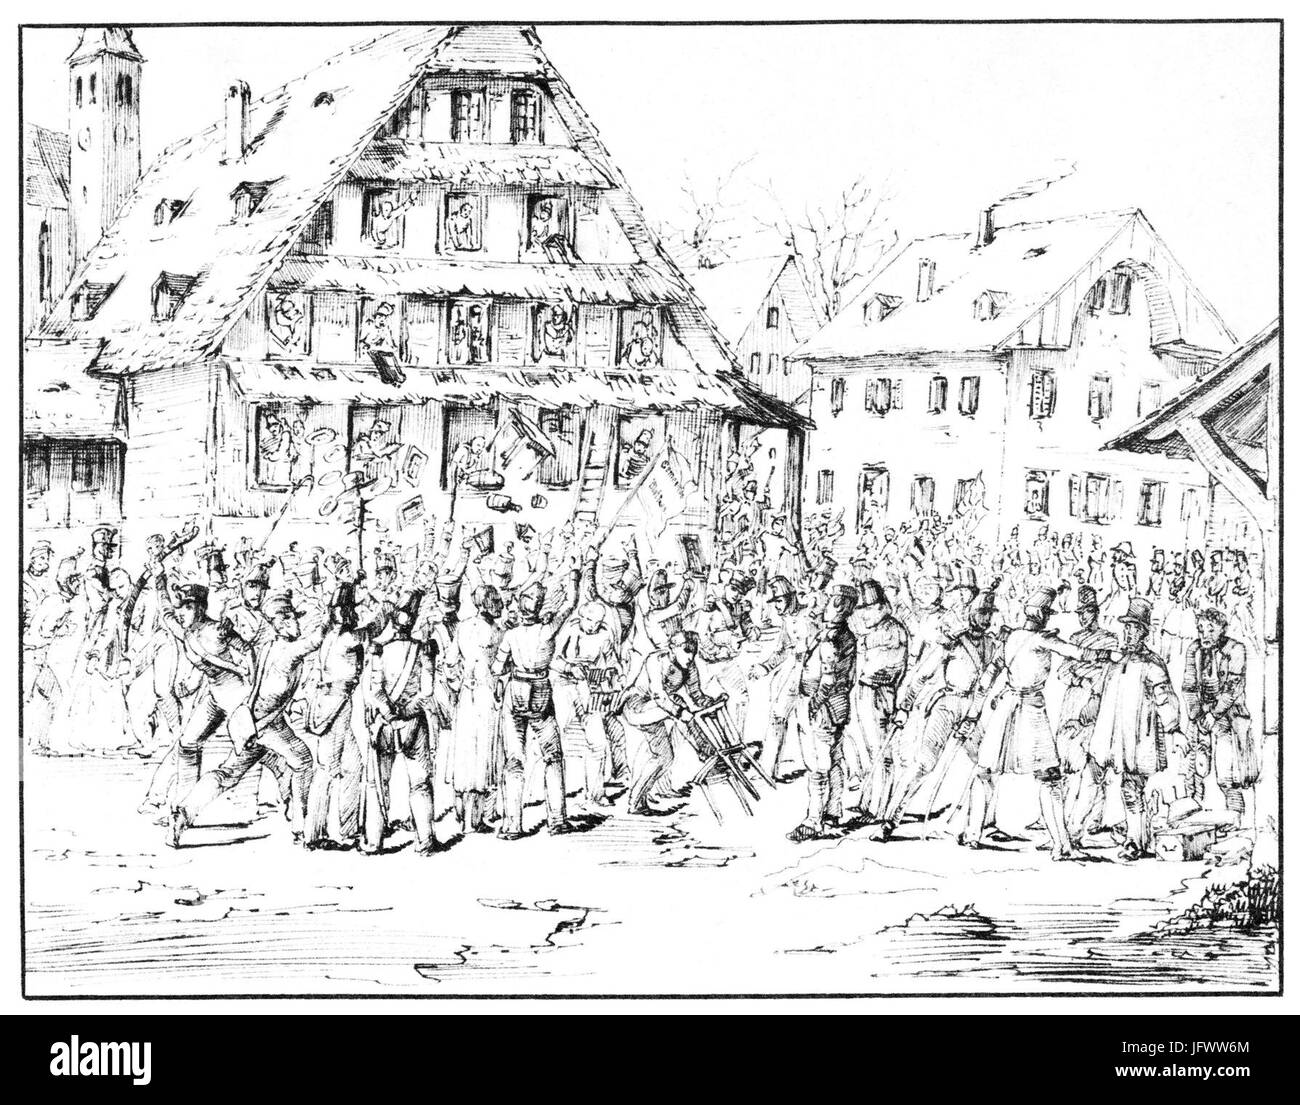 Charles-Alexandre Steinhäuslin 17 - Des soldats de la brigade Frei pillent l' auberge du Kl6sterli, à Malters (25.11.1847) Stock Photo